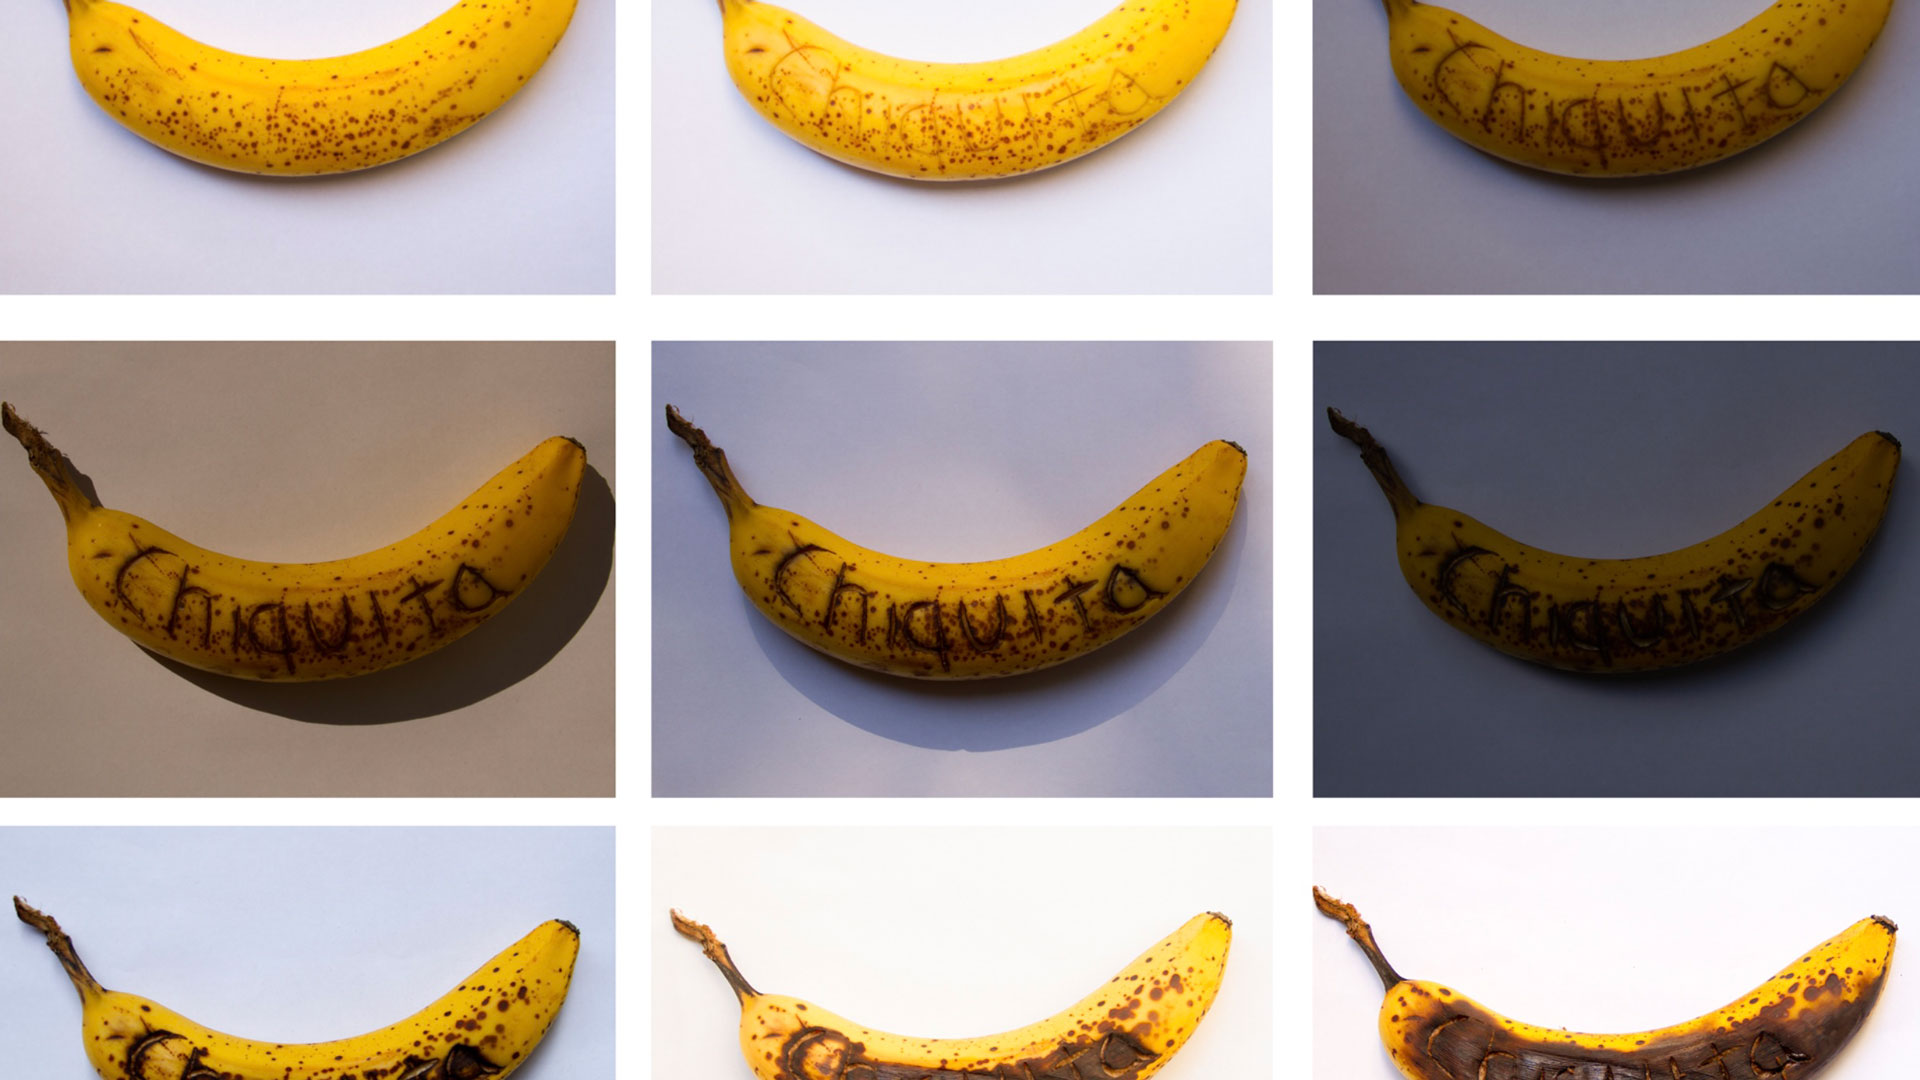 La exposición Banana Craze / La fiebre del banano es reconocida en la prensa internacional